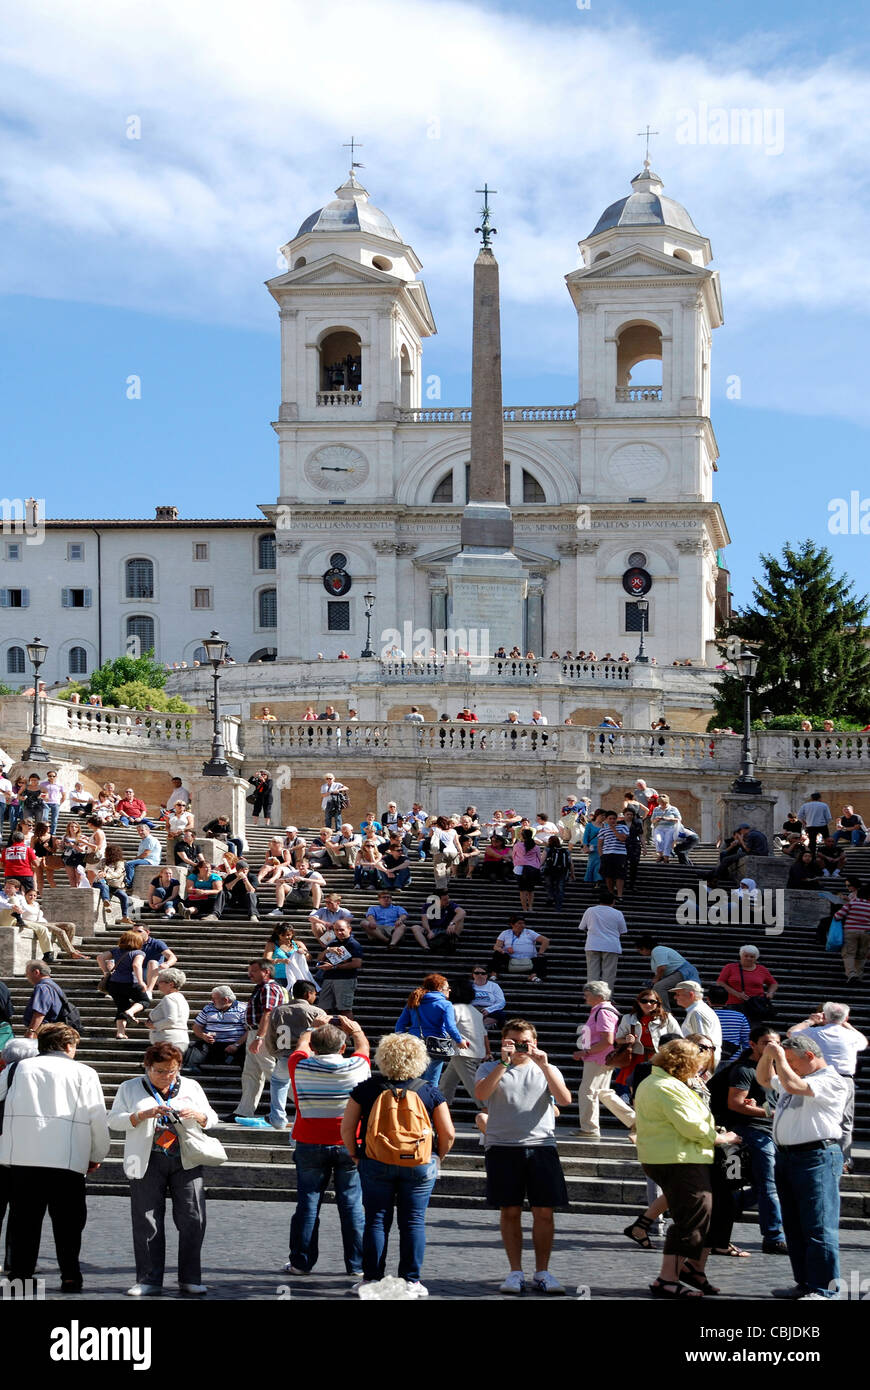 Spanish steps of the Piazza di Spagna in Rome with the church Trinita dei Monti. Stock Photo